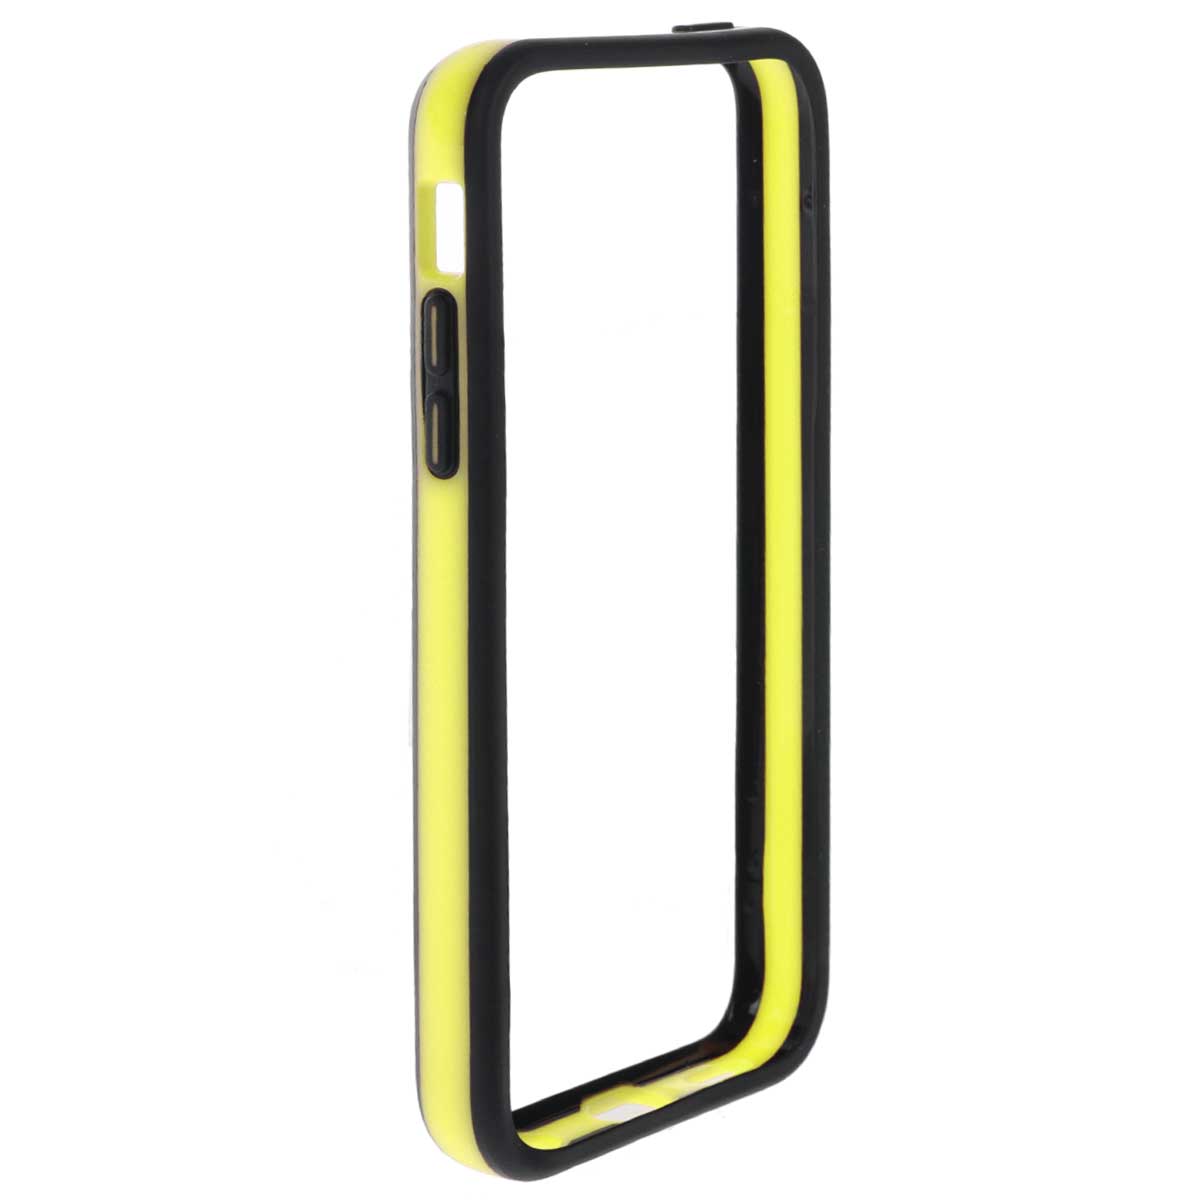 Deppa Bumper -  iPhone 5, Black Yellow - Deppa63131- Deppa Bumper  iPhone 5             .         .